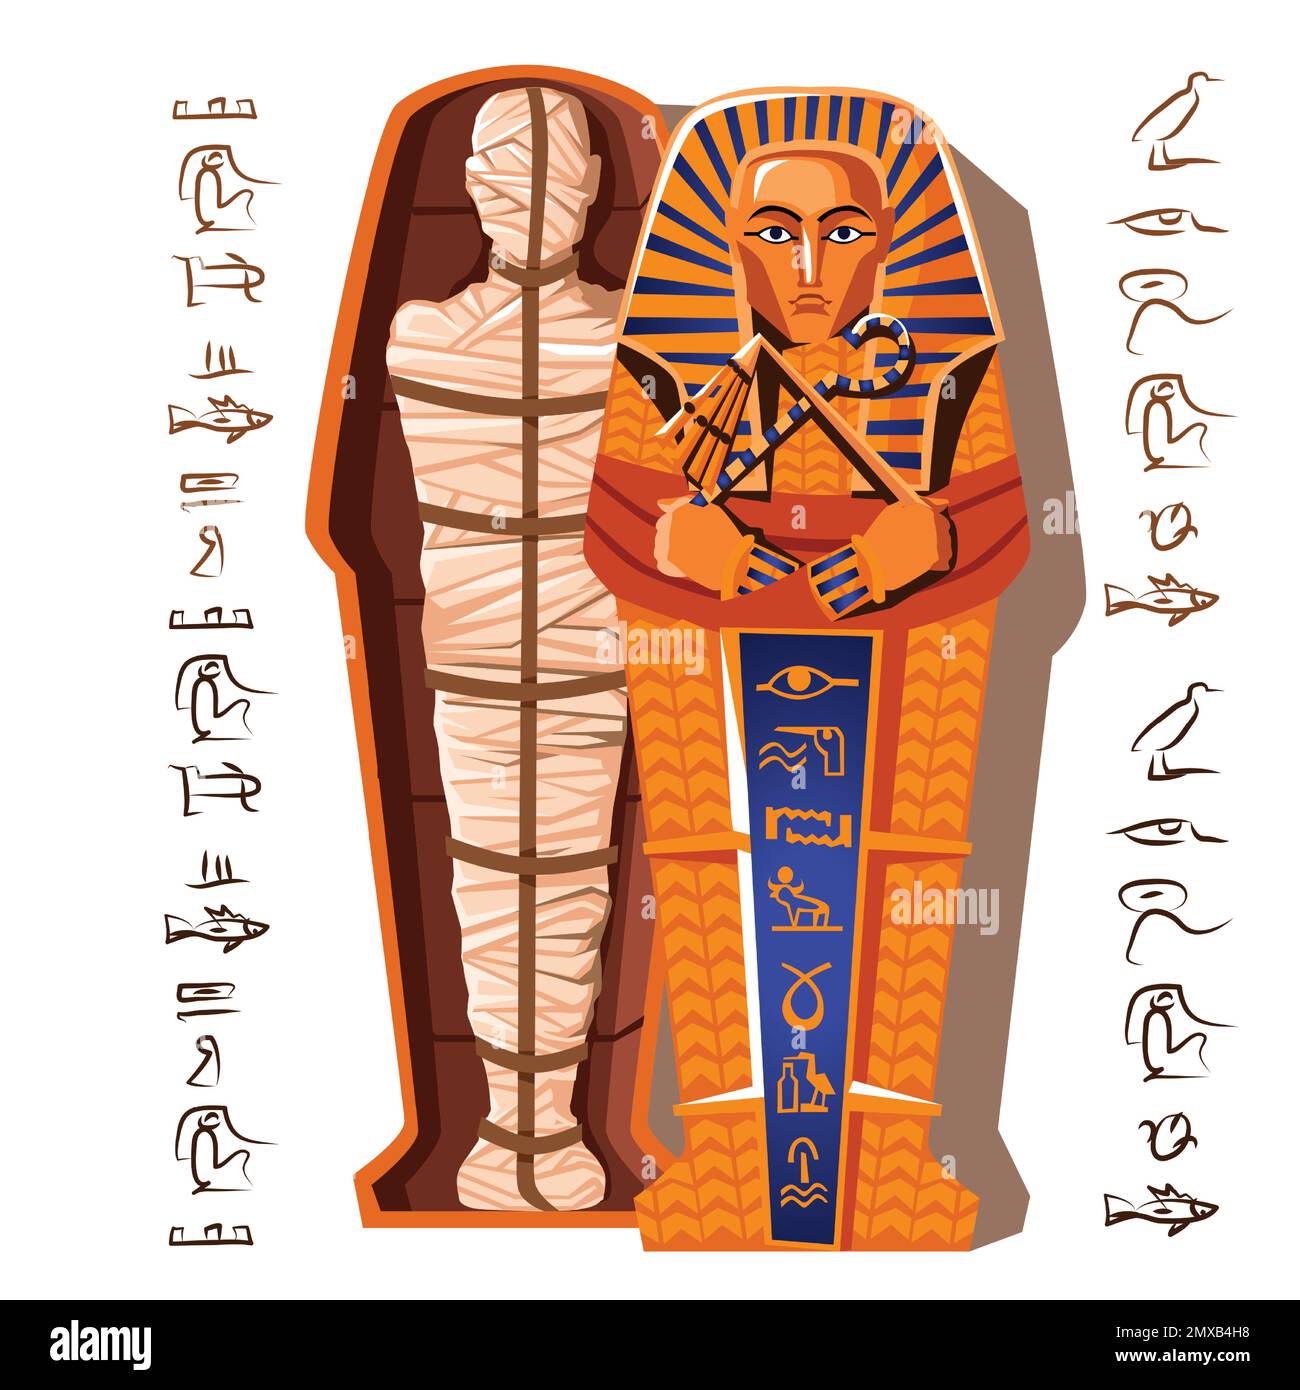 Illustrazione vettoriale del fumetto faraone mummy. Processo di mummificazione fine, embalming corpo morto, il cadavere umano è avvolto con tela di lino e posto in sarcofago. Culto dei morti dall'antico Egitto Illustrazione Vettoriale